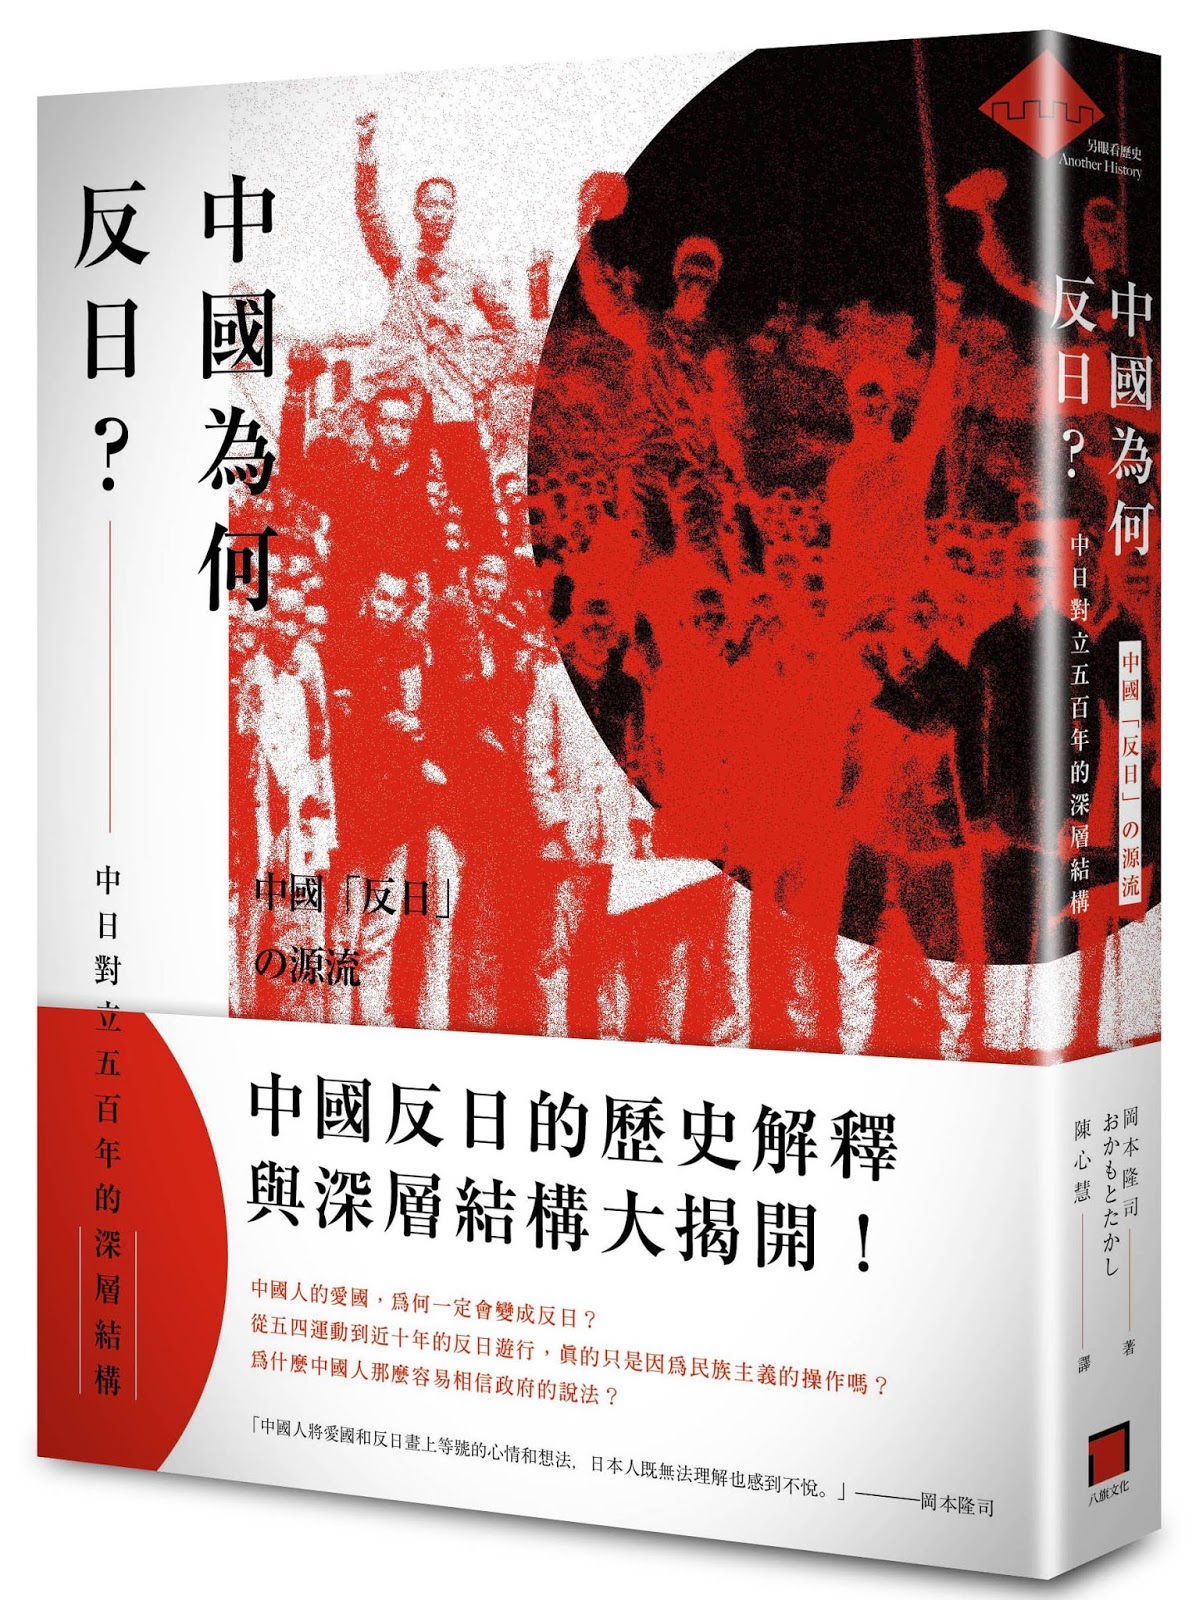 八旗文化gusa 中國為何反日 中日對立五百年的深層結構 岡本隆司著